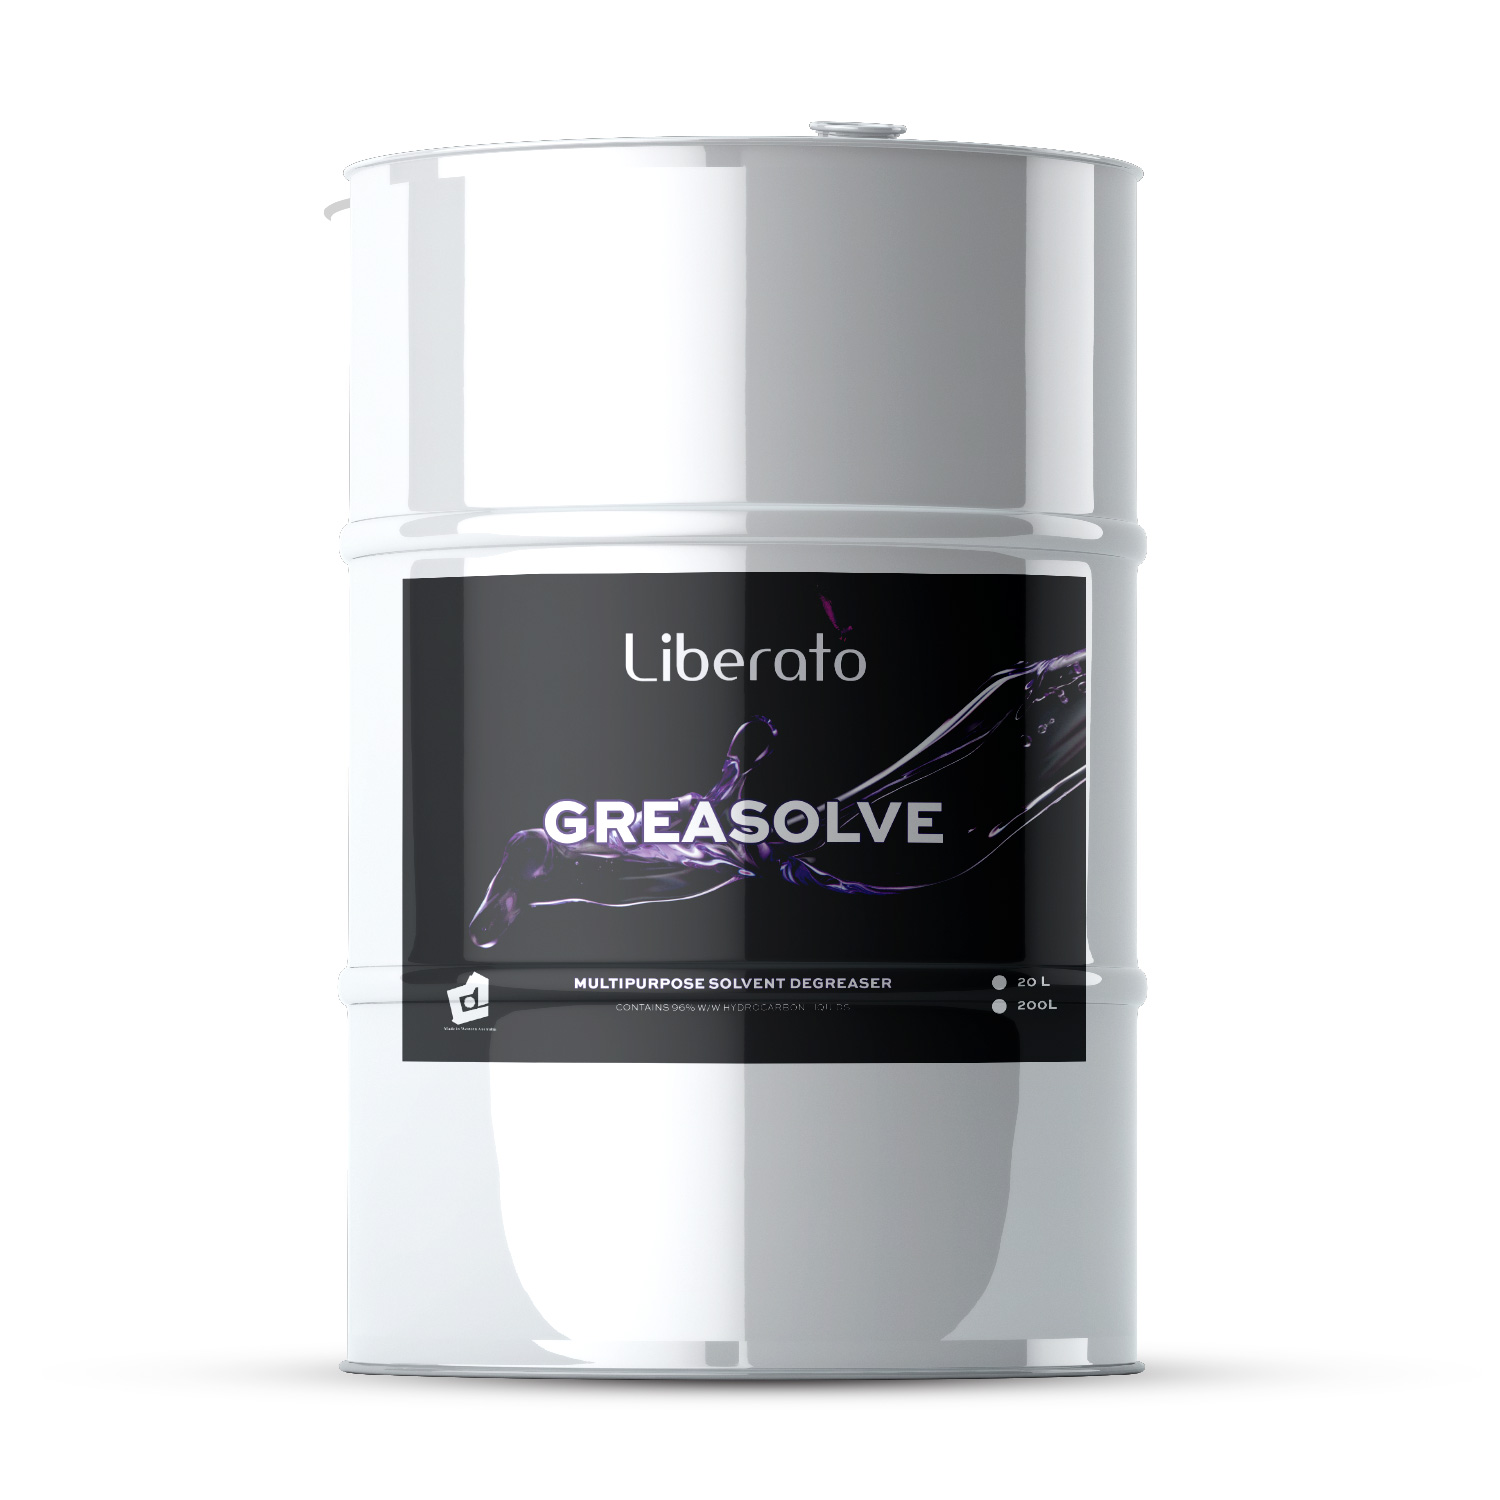 liberato greasolve multipurpose solvent degreaser